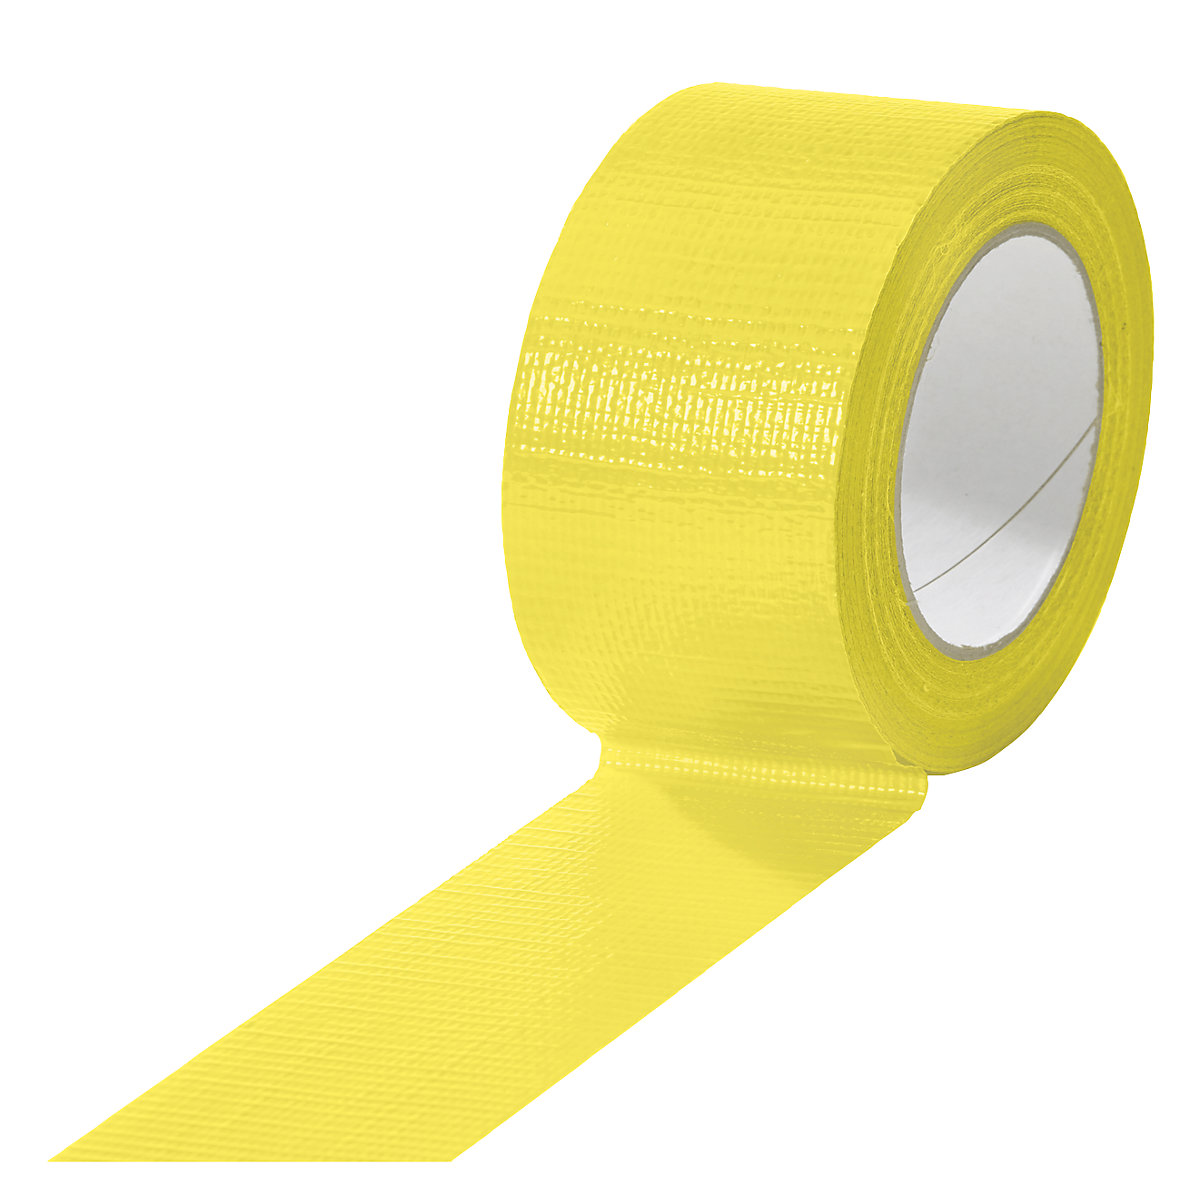 Gewebeband, in verschiedenen Farben, VE 18 Rollen, gelb, Bandbreite 50 mm-18